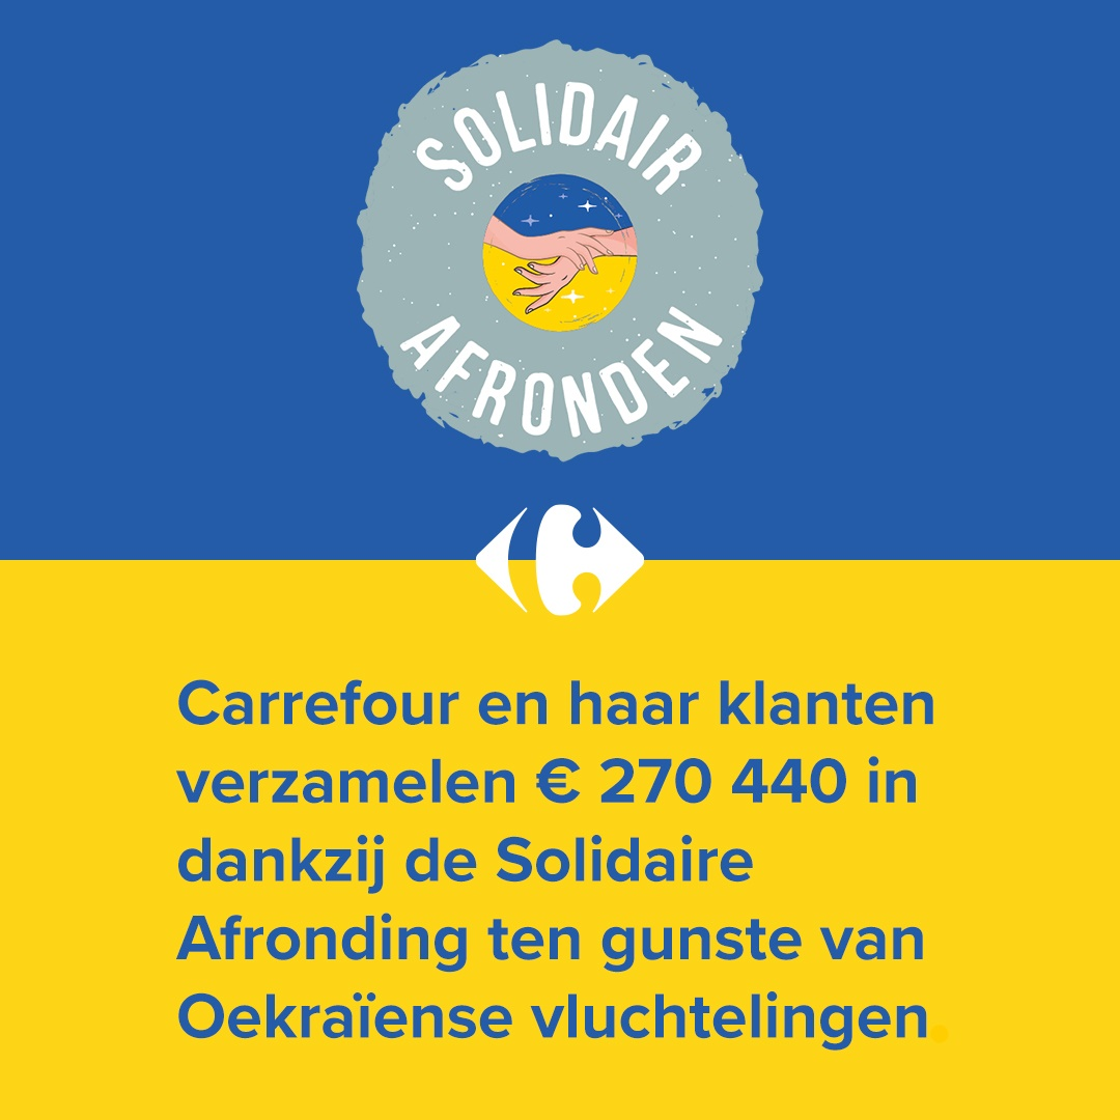 Carrefour en haar klanten verzamelen € 270 440 in dankzij de Solidaire Afronding ten gunste van Oekraïense vluchtelingen